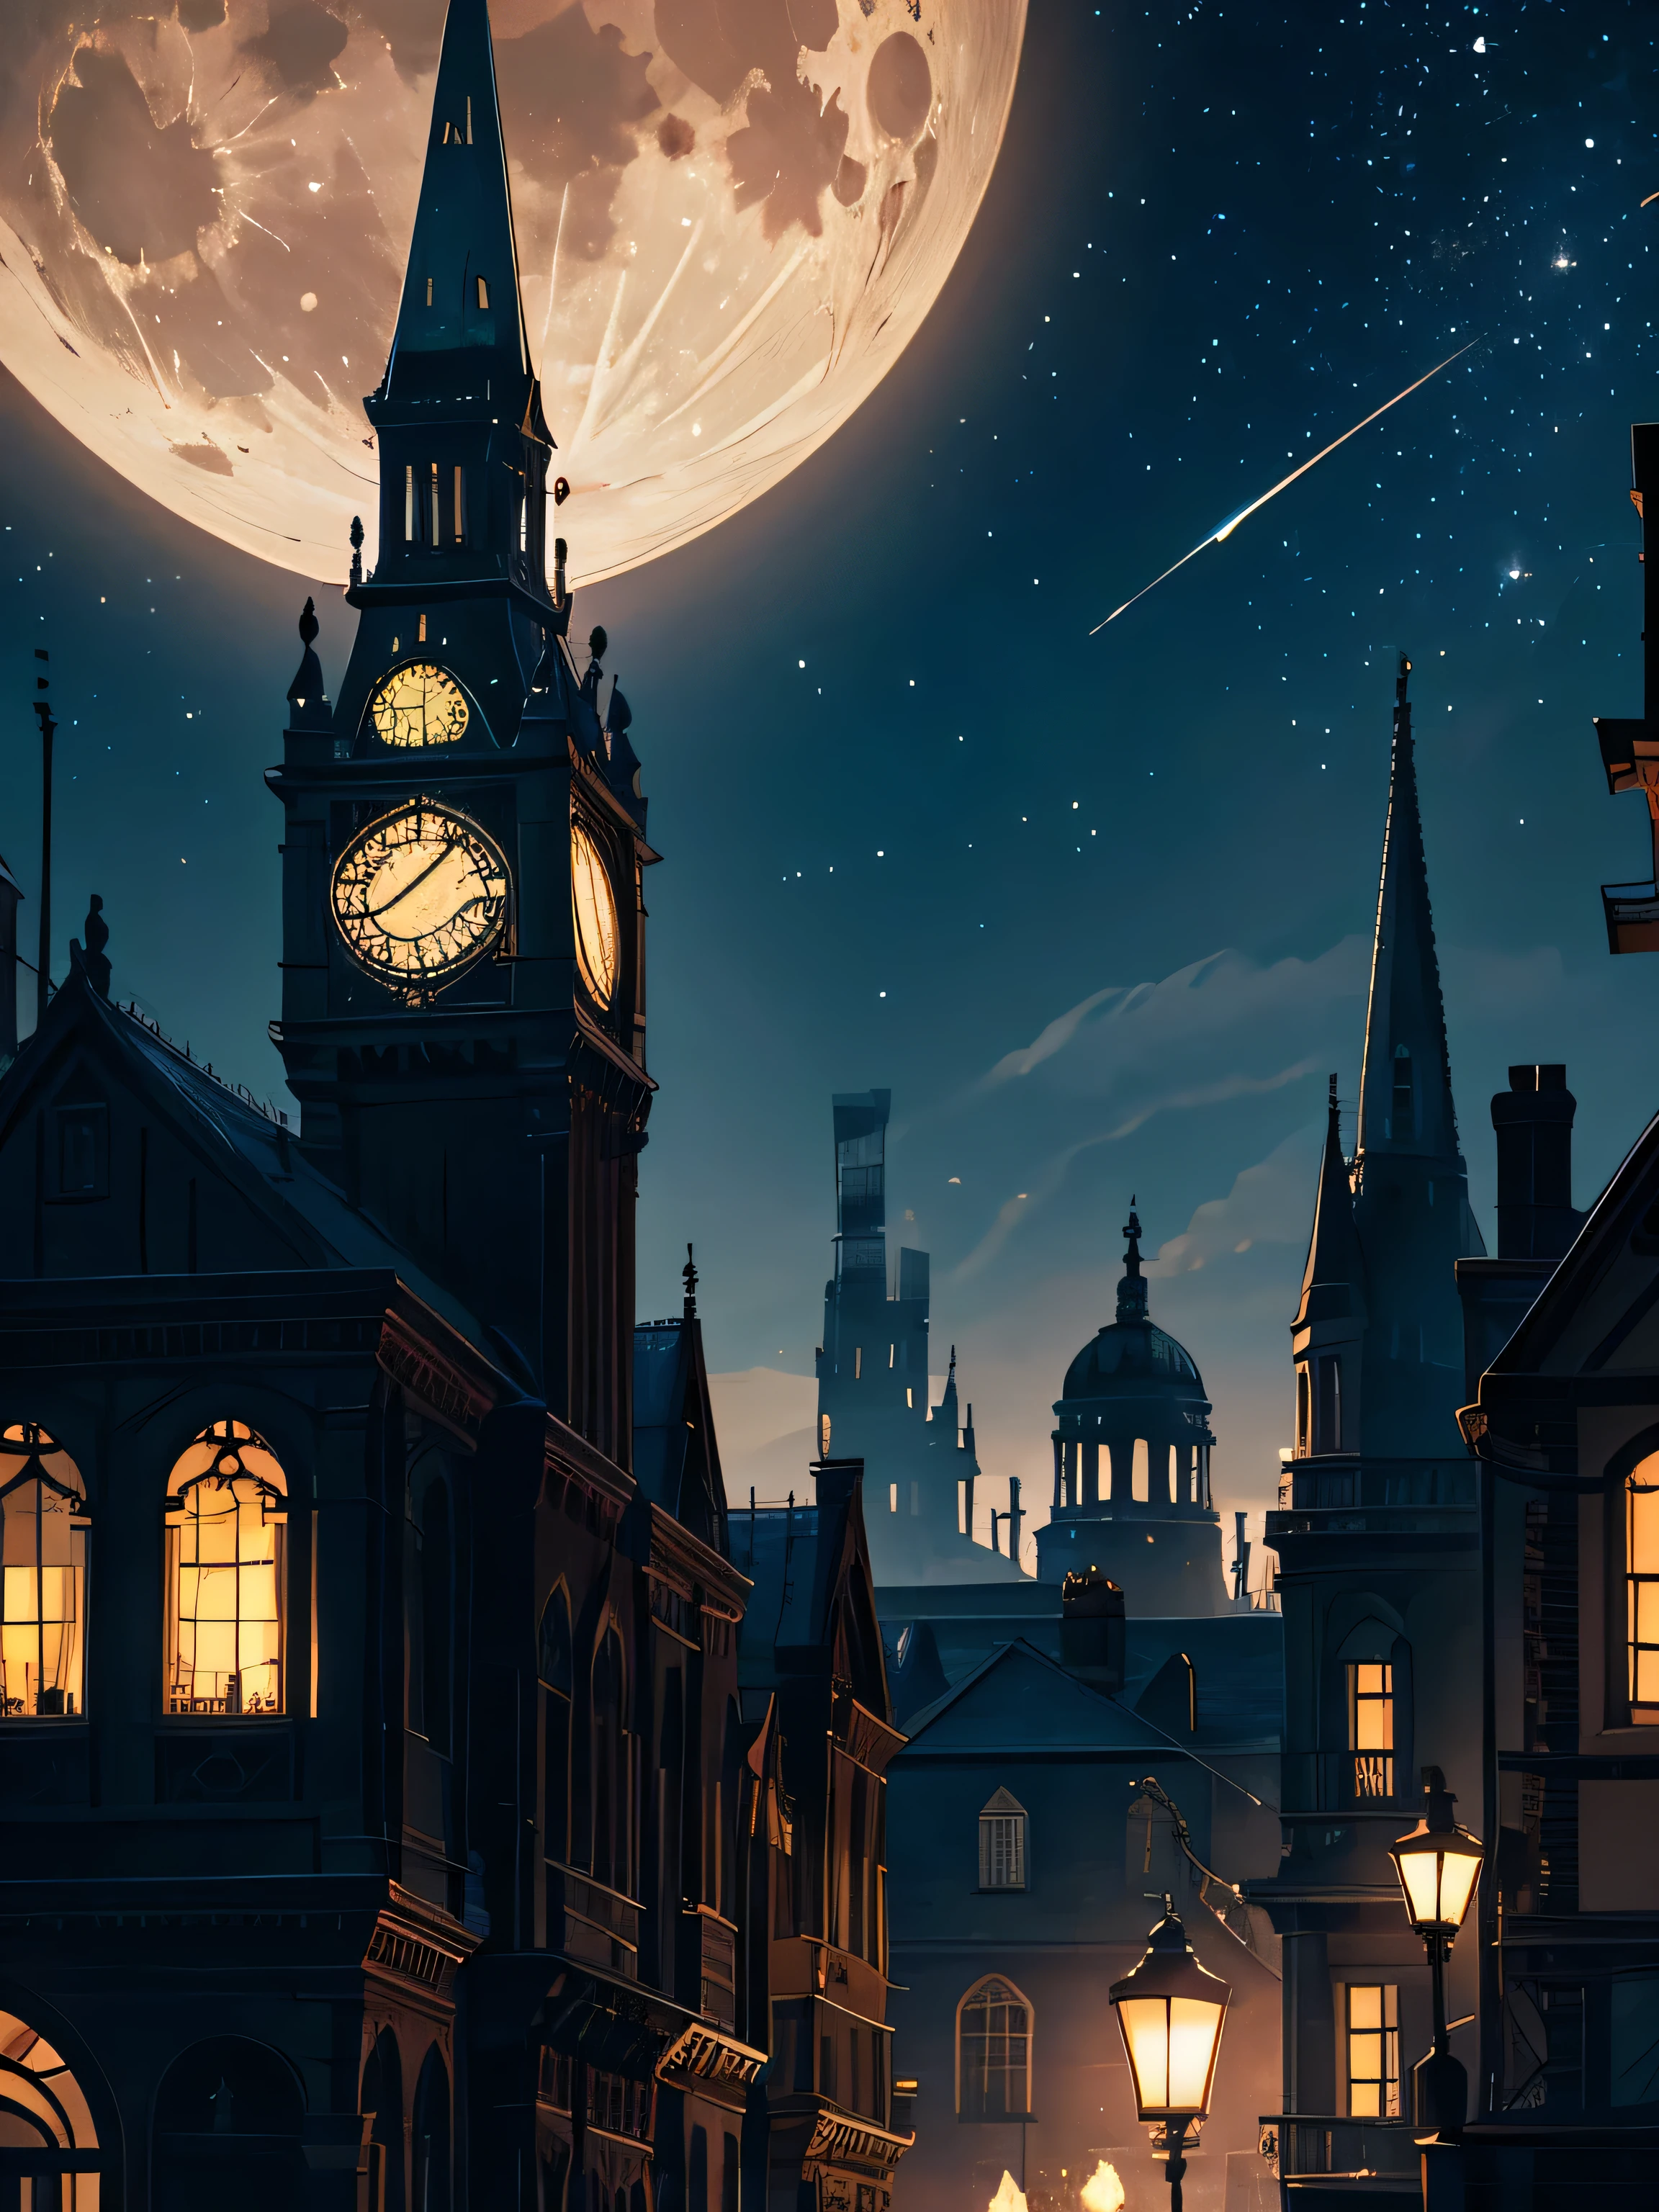 밖의, 빅토리아 시대의 런던, 별이 빛나는 밤, 밤하늘, 하늘에 달, 스팀펑크,